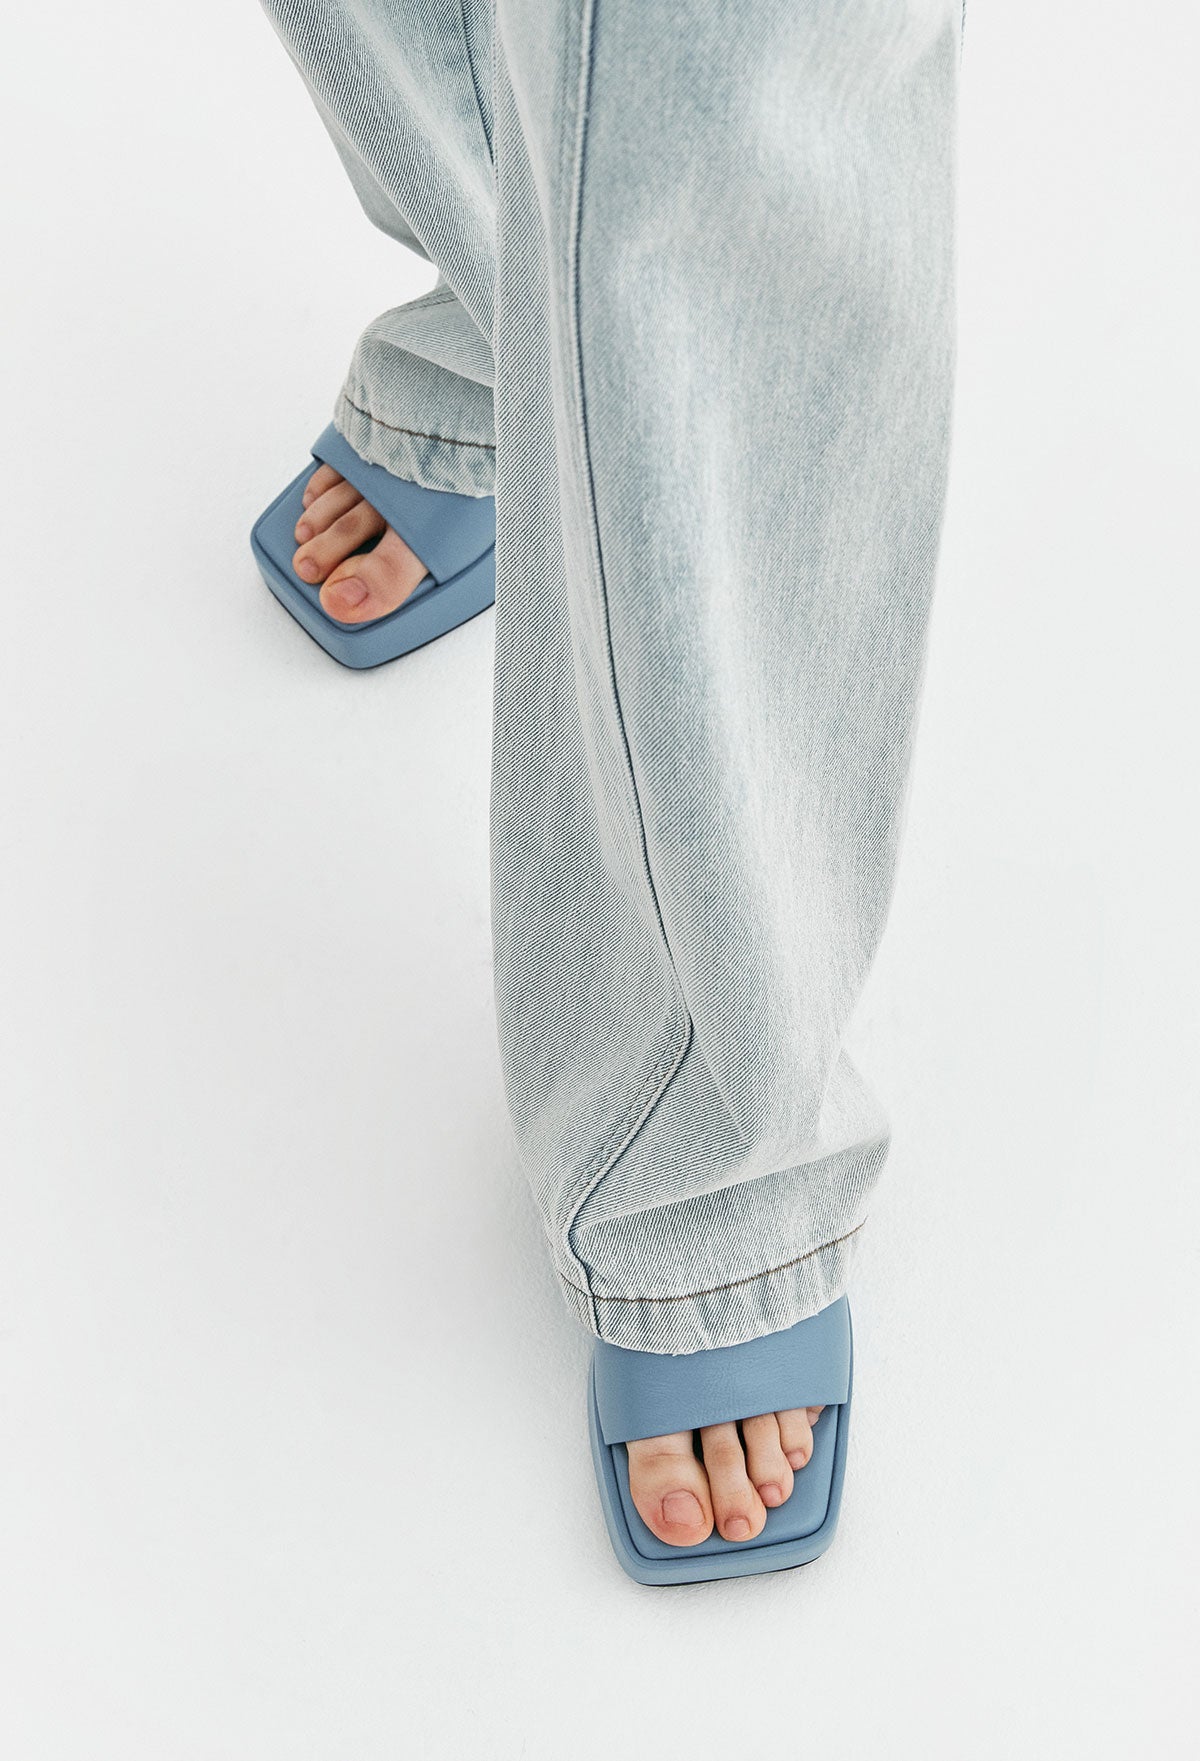 721 Low-rise Denim Jeans